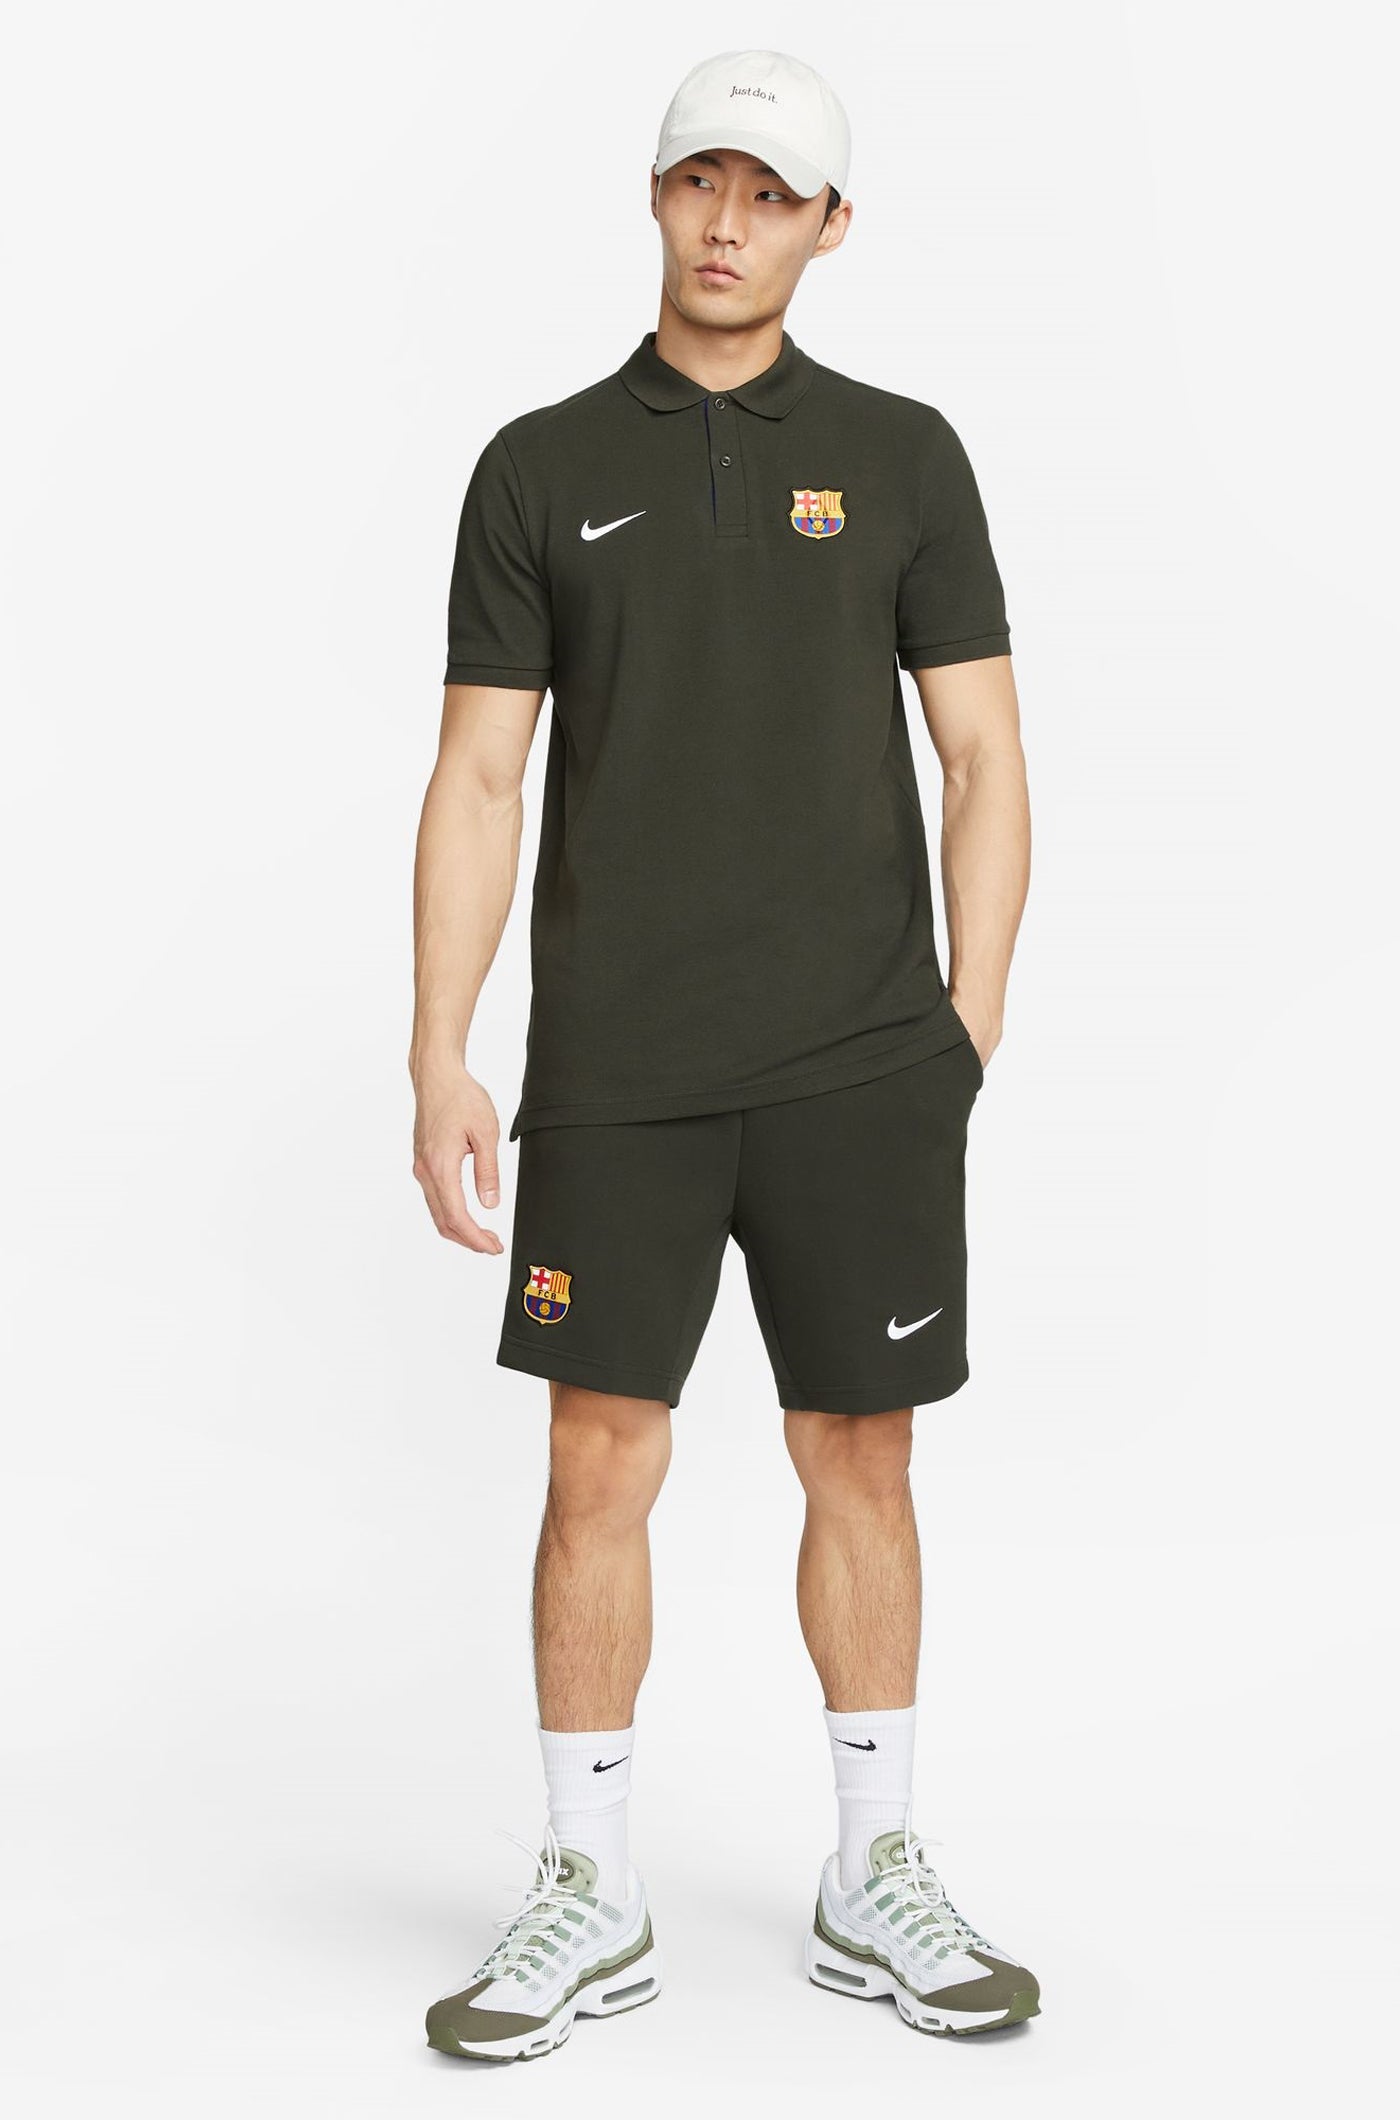 Tech Barça Nike Short – Barça Official Store Spotify Camp Nou